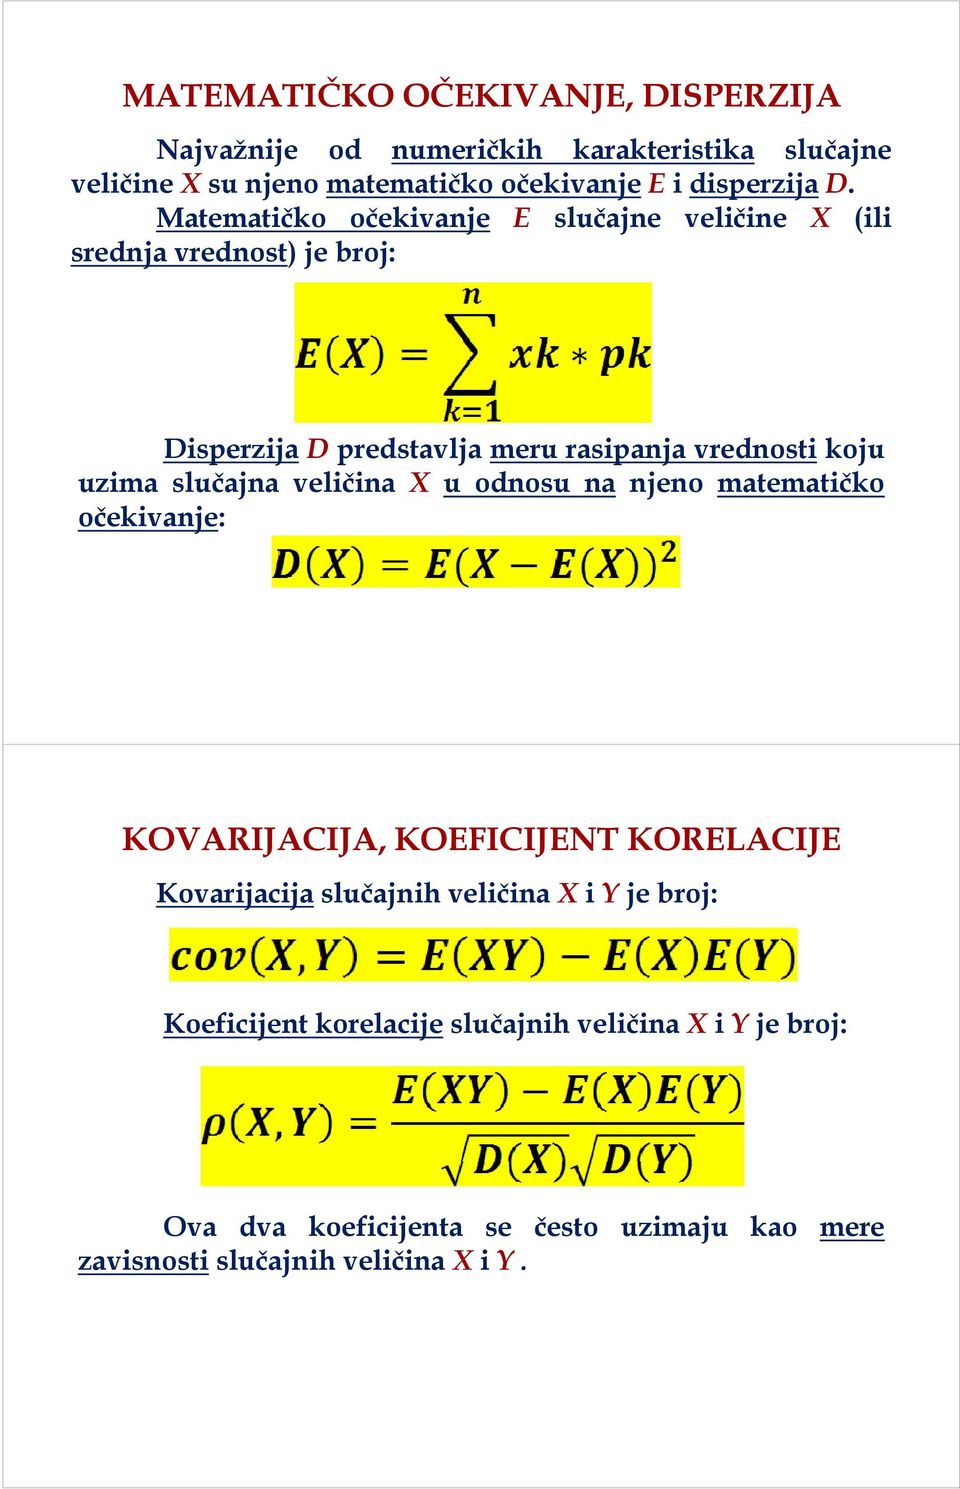 Matematičko očekivanje E slučajne veličine X (ili srednja vrednost) jebroj: Disperzija D predstavlja meru rasipanja vrednosti koju uzima slučajna